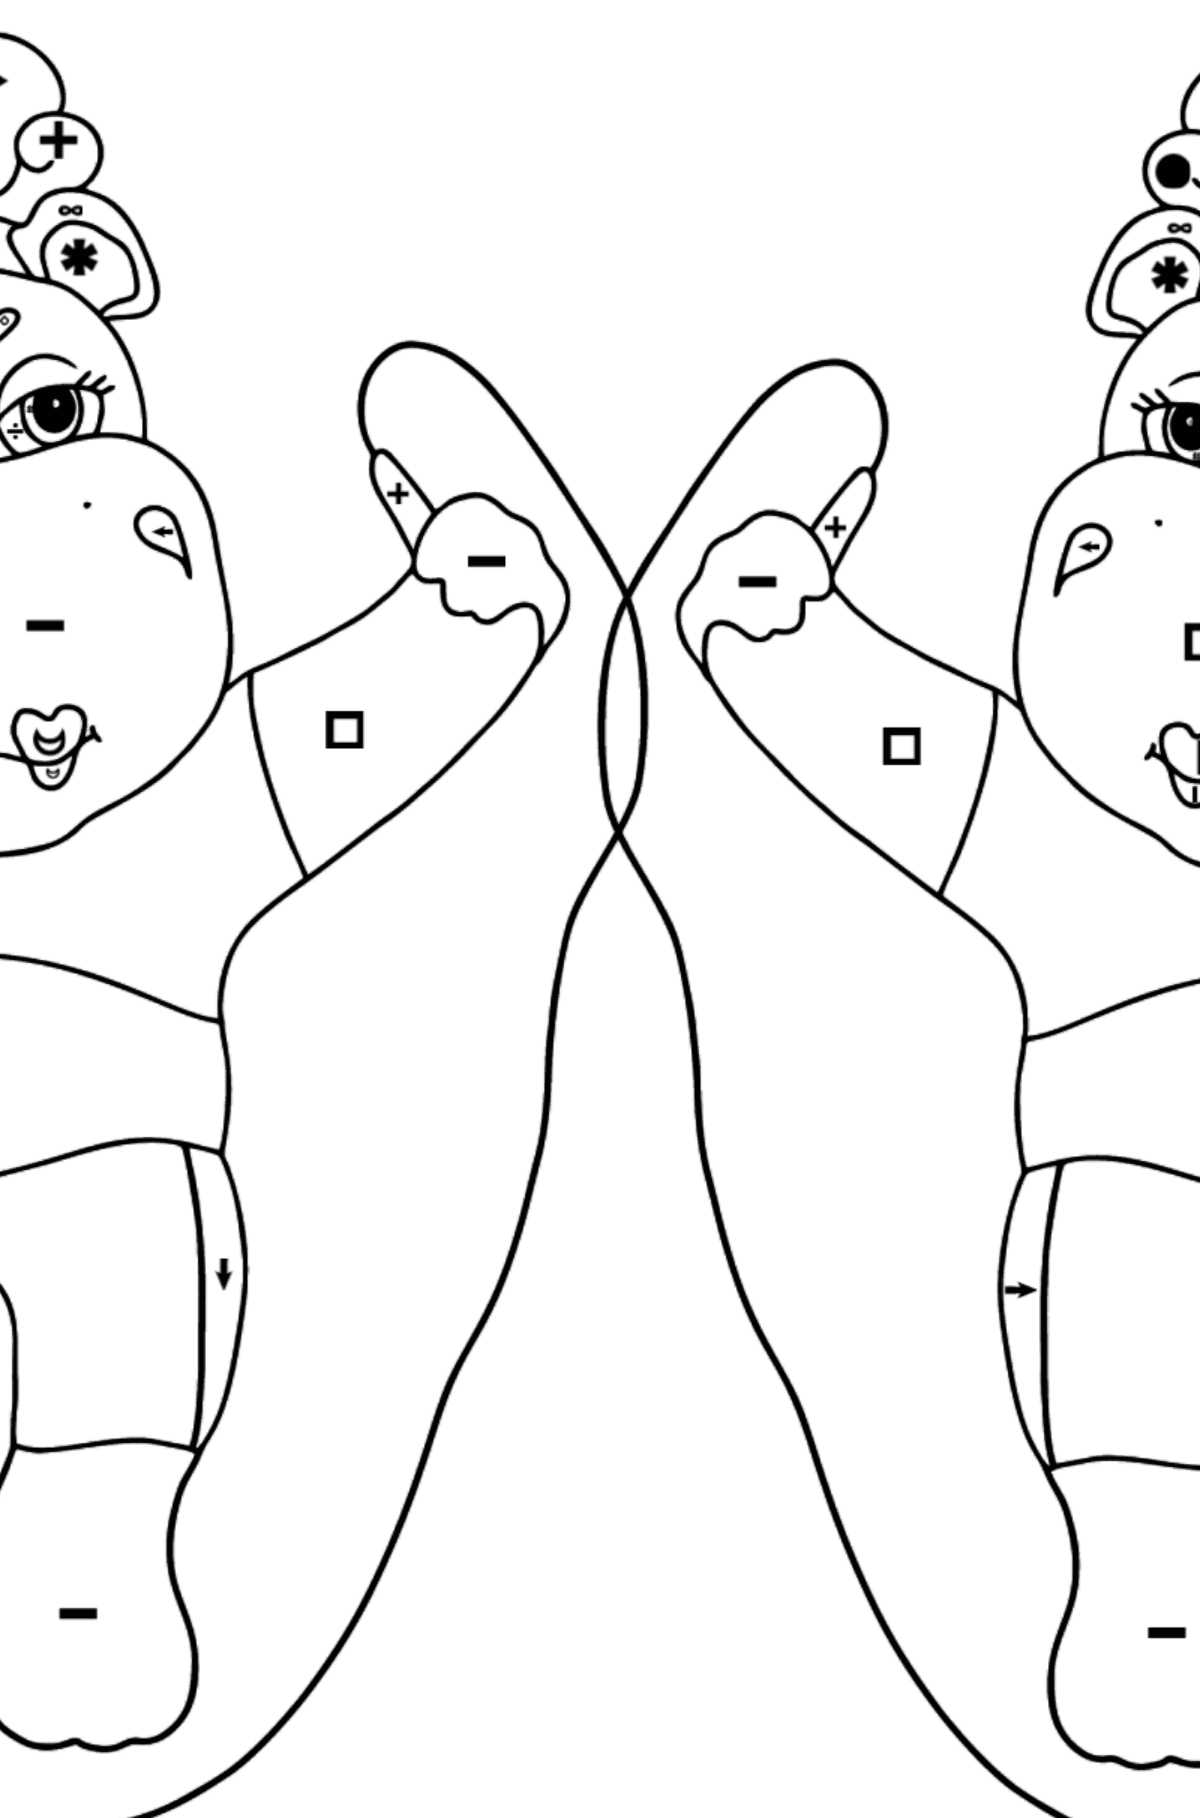 Coloriage Hippopotames drôles (difficile) - Coloriage par Symboles pour les Enfants